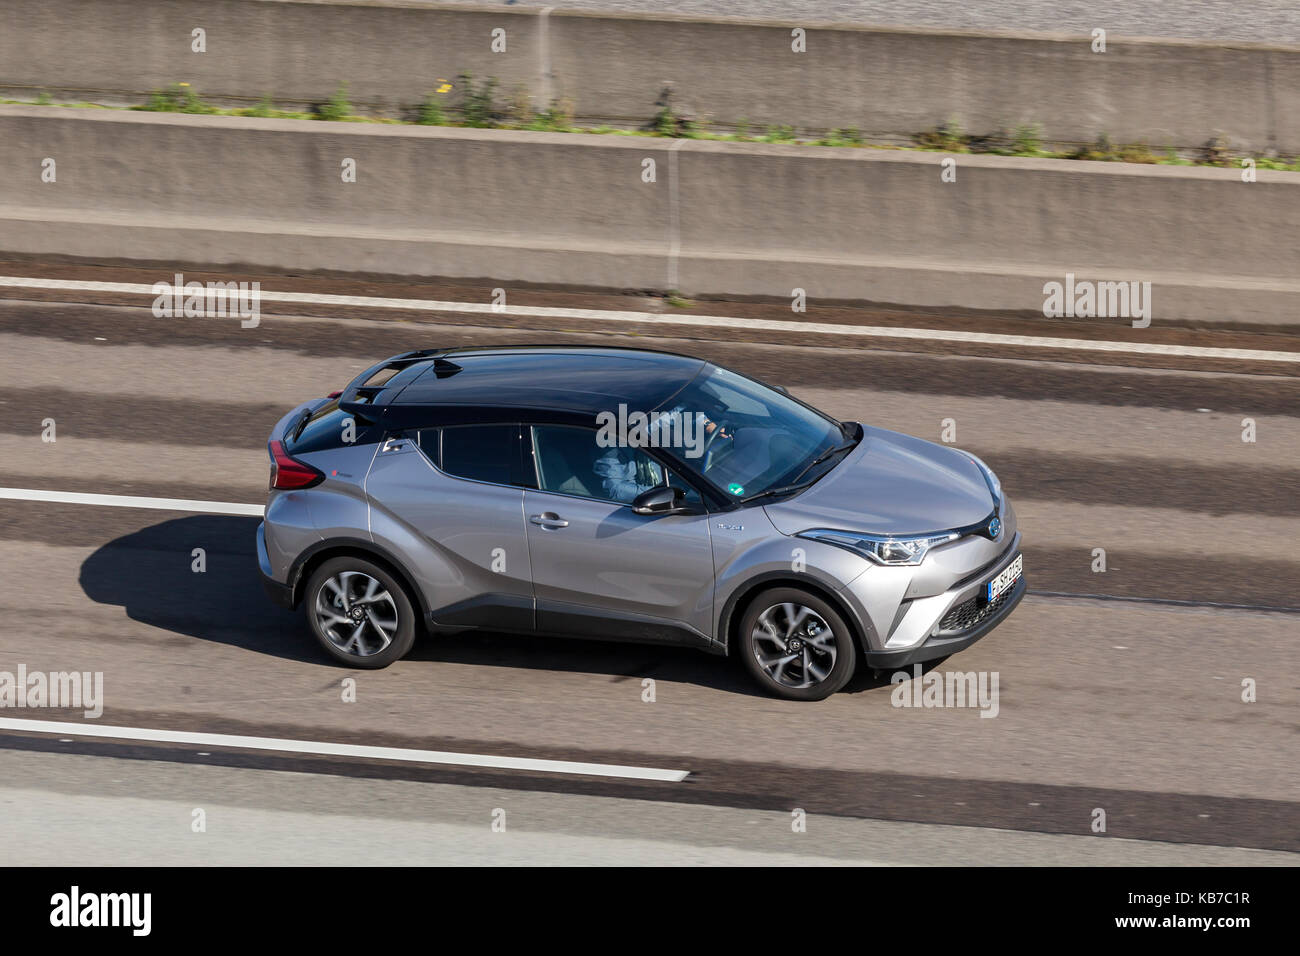 Francoforte, Germania - Sep 19, 2017: Toyota c-hr hybrid ultracompatto che sta suv crossover la guida su strada in Germania Foto Stock